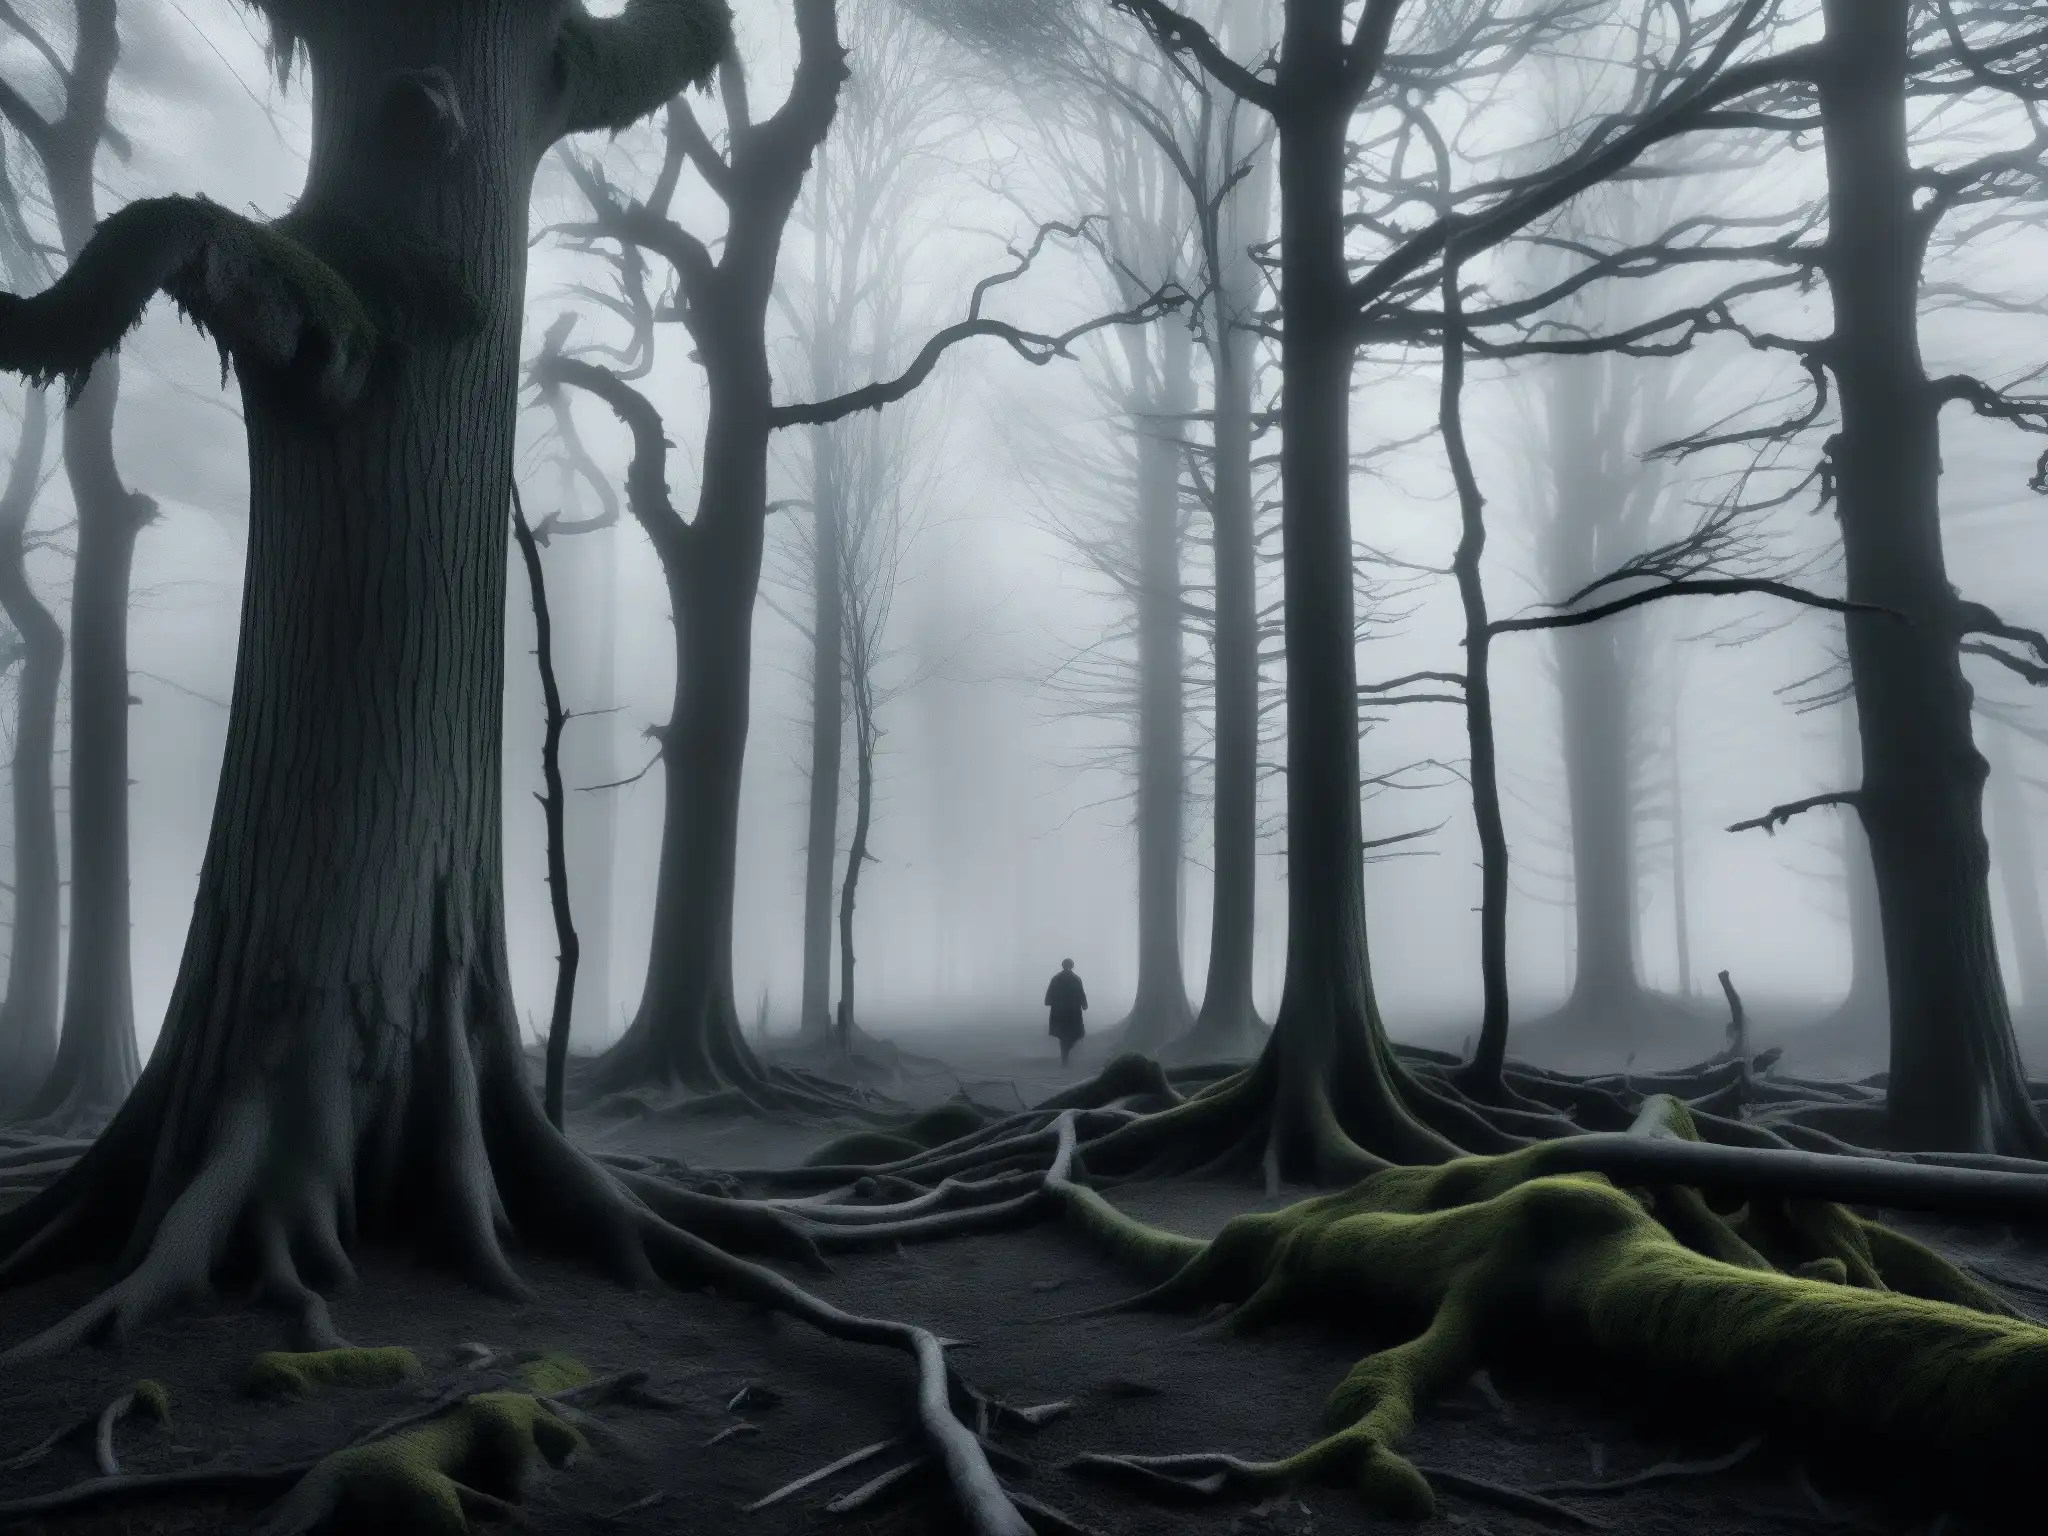 Imagen en blanco y negro de un bosque cubierto de niebla al atardecer, con árboles retorcidos y maleza enredada que crea una atmósfera misteriosa